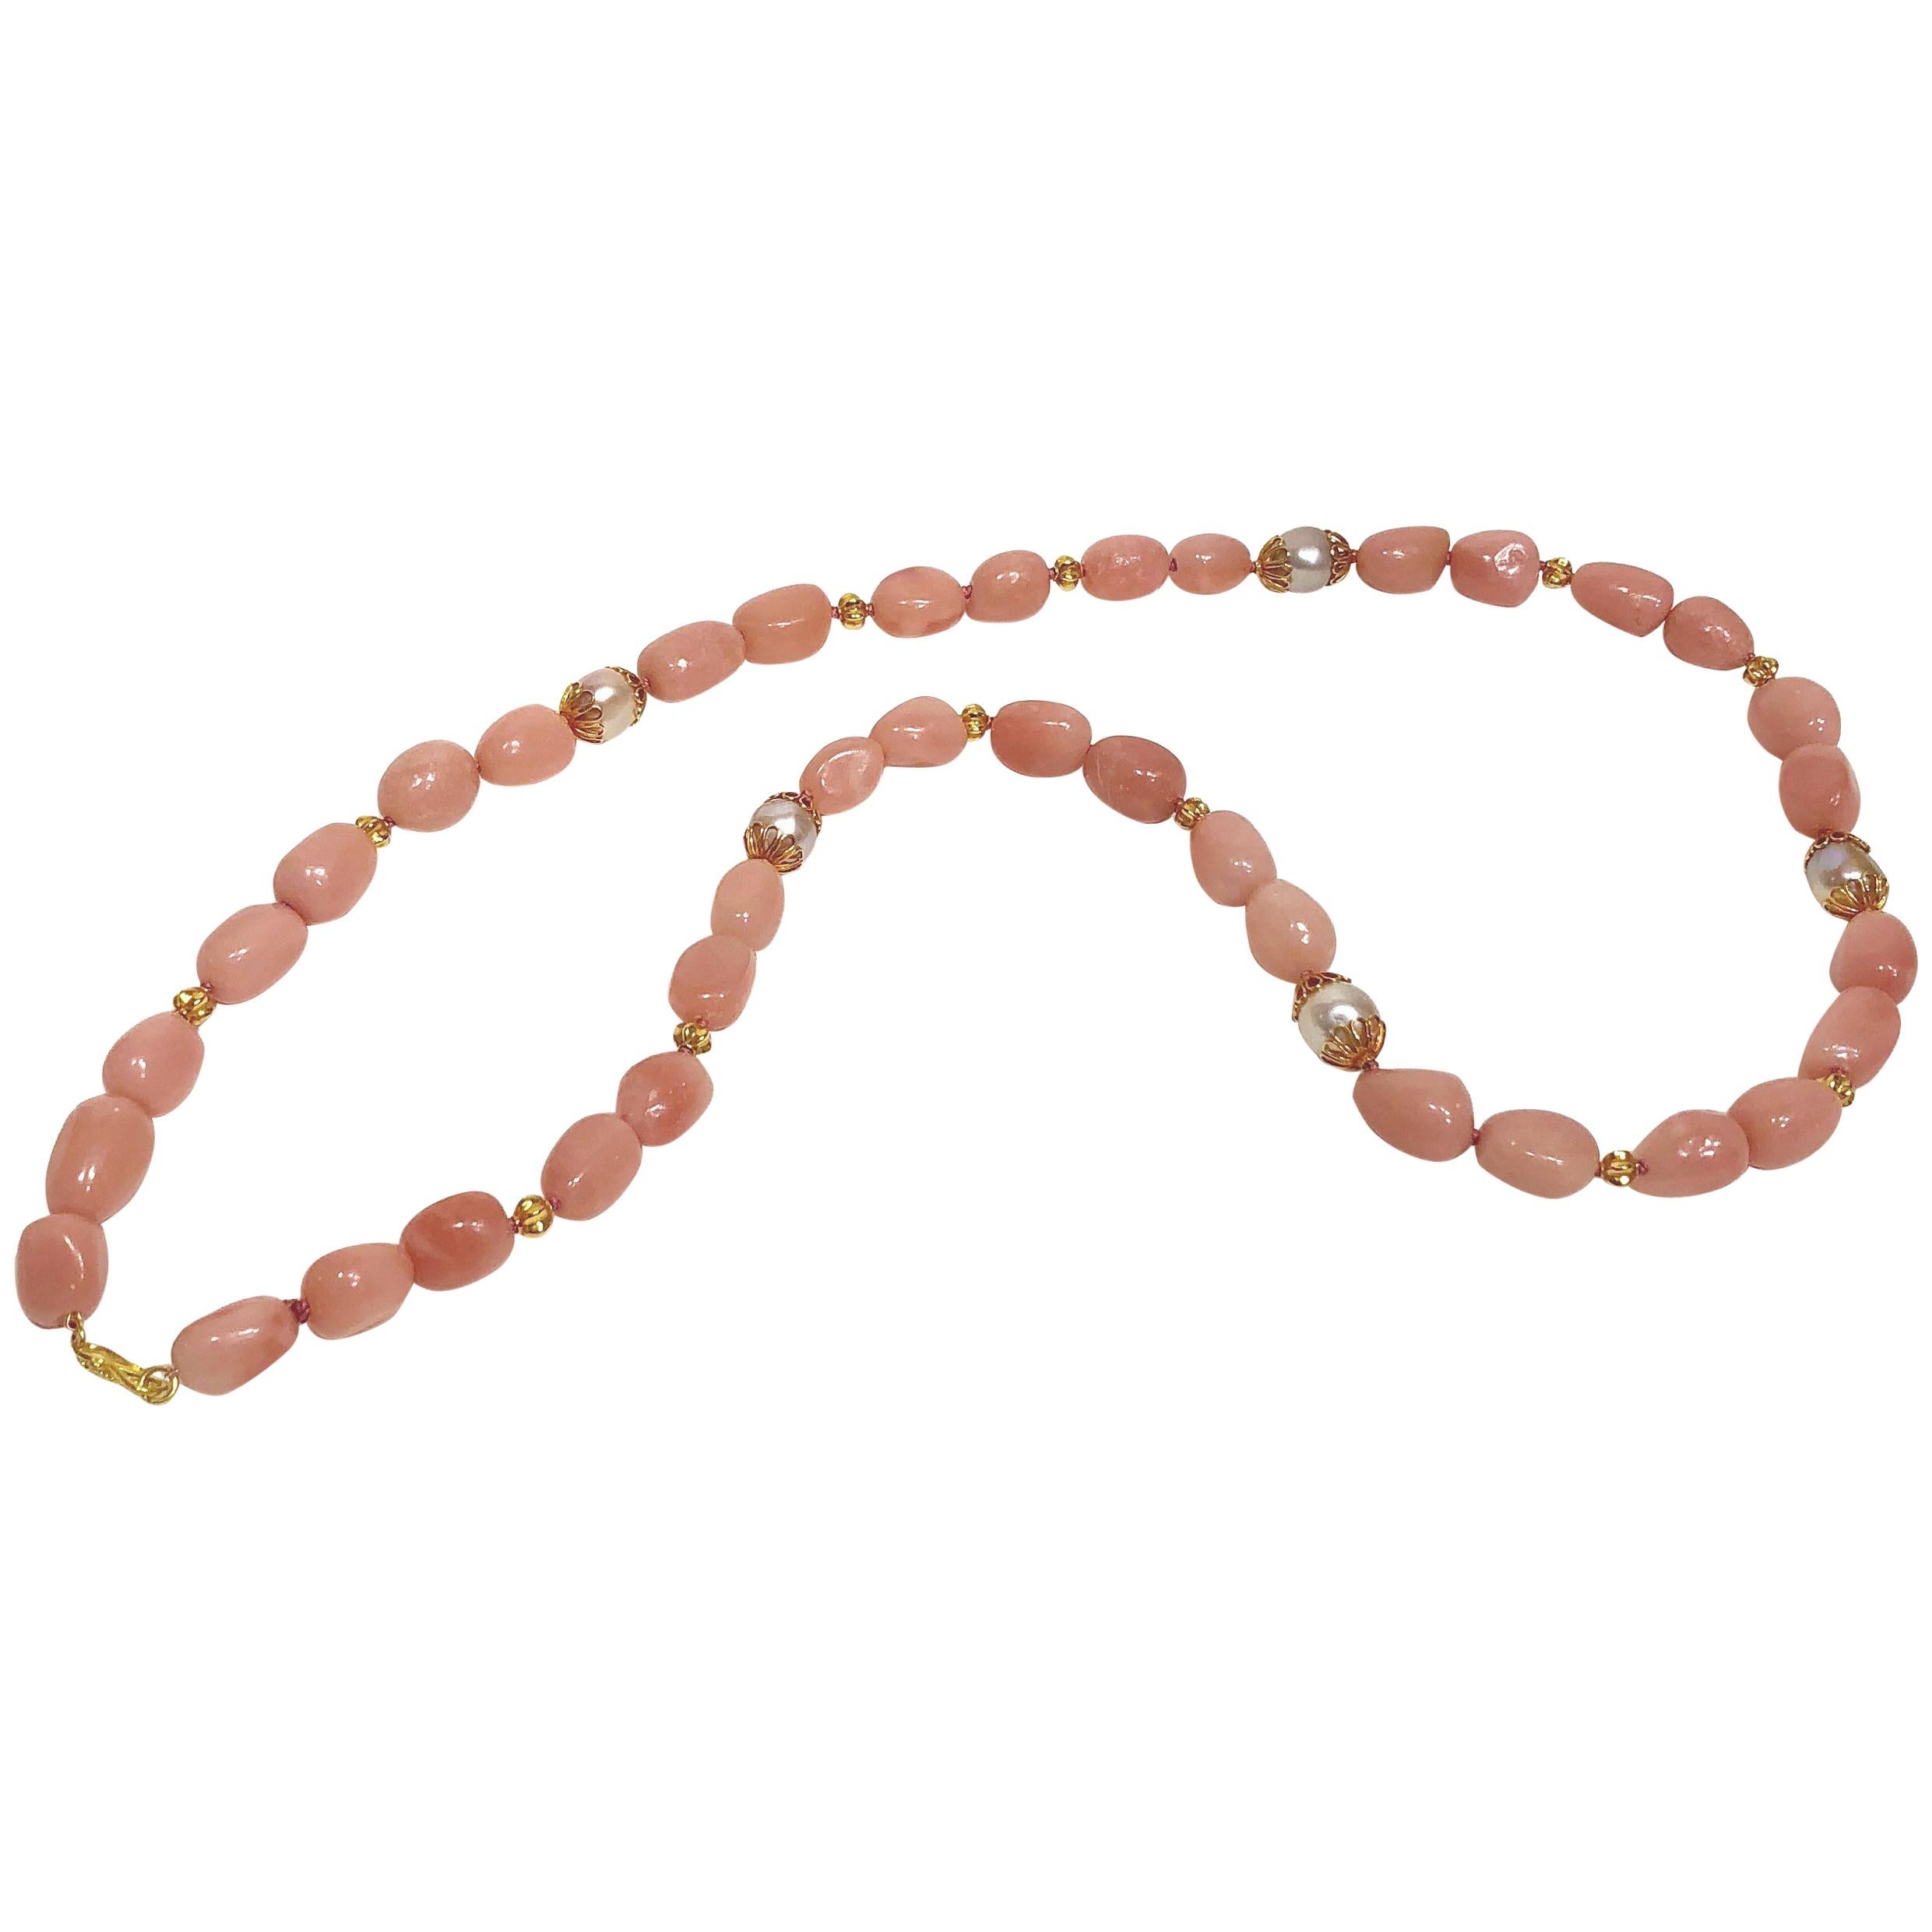 Collier en or 18 carats avec aragonite rose, perles d'eau douce et perles